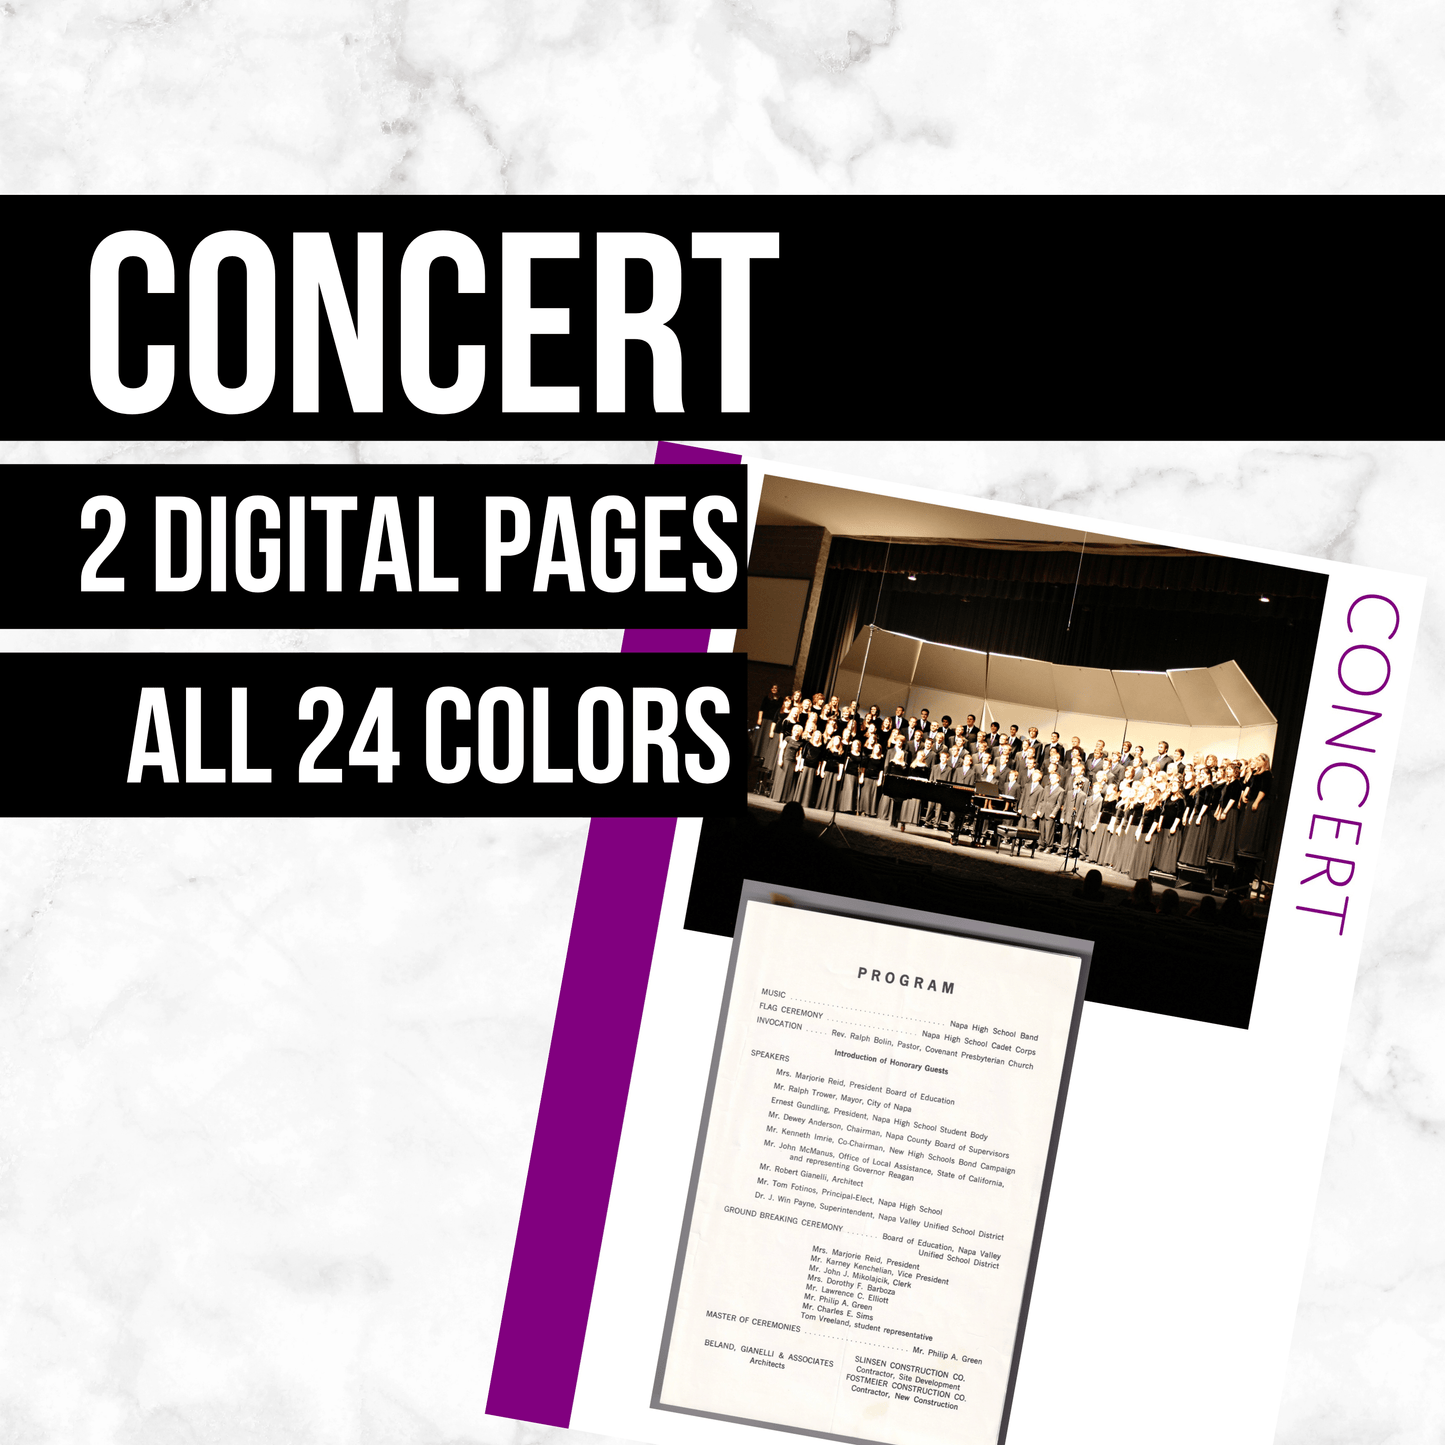 Concert: Printable Genealogy Form (Digital Download)